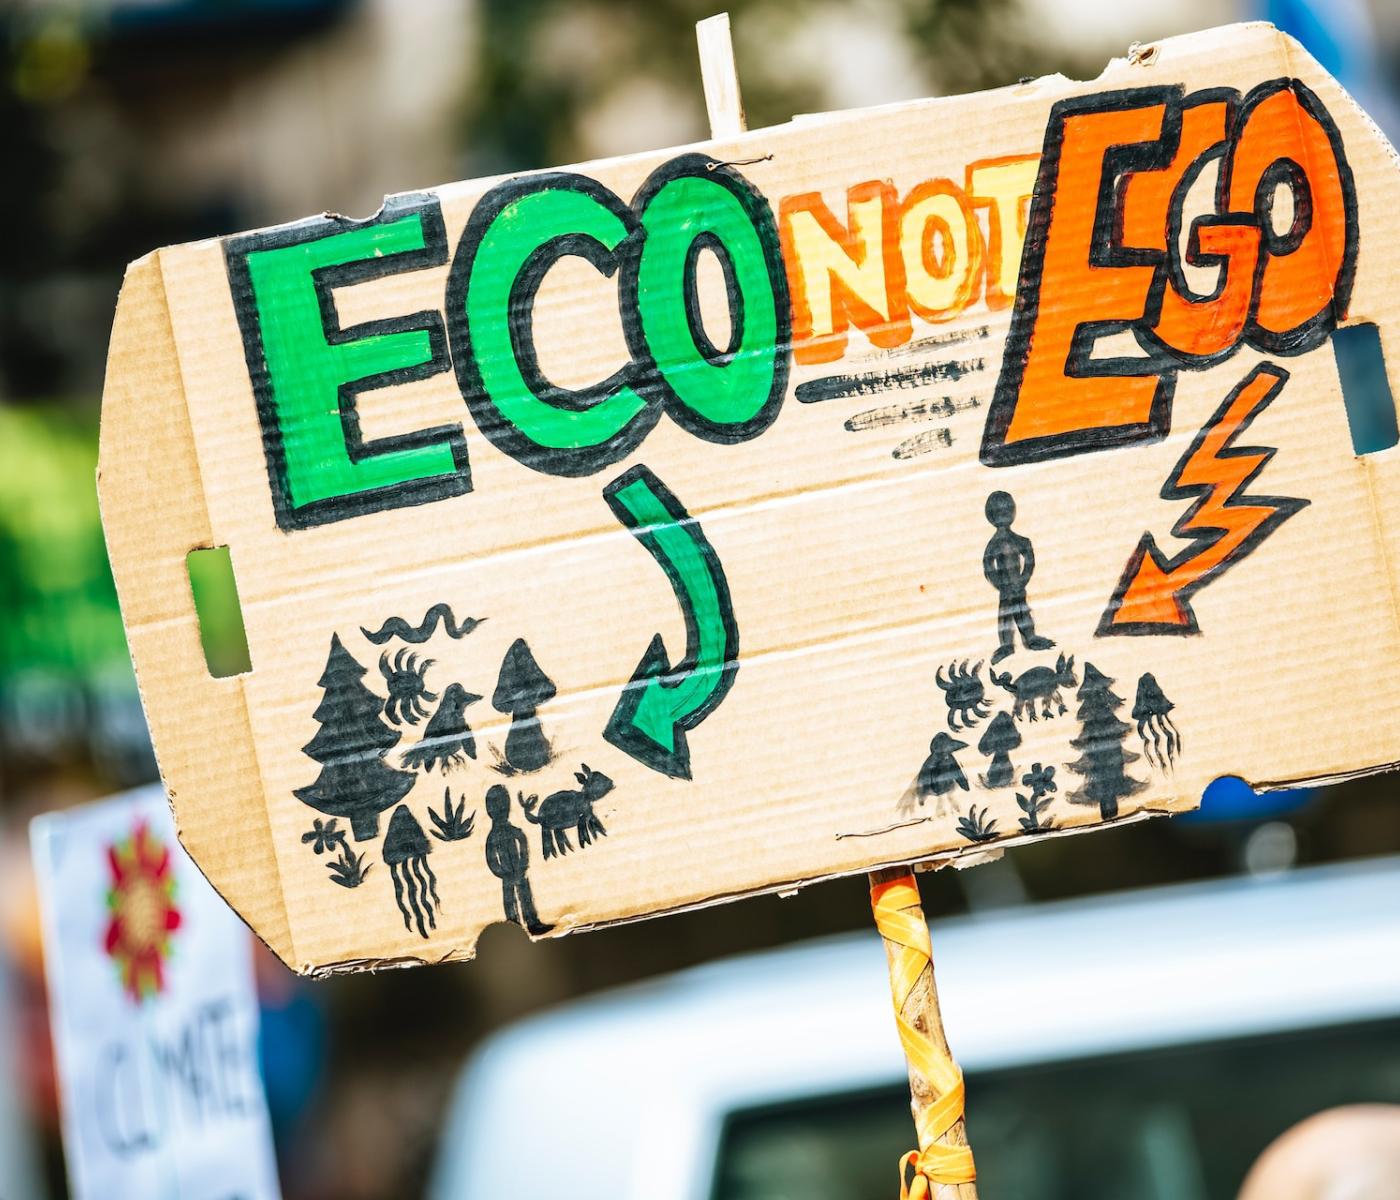 Schild aus Pappe mit dem Spruch Eco not Ego